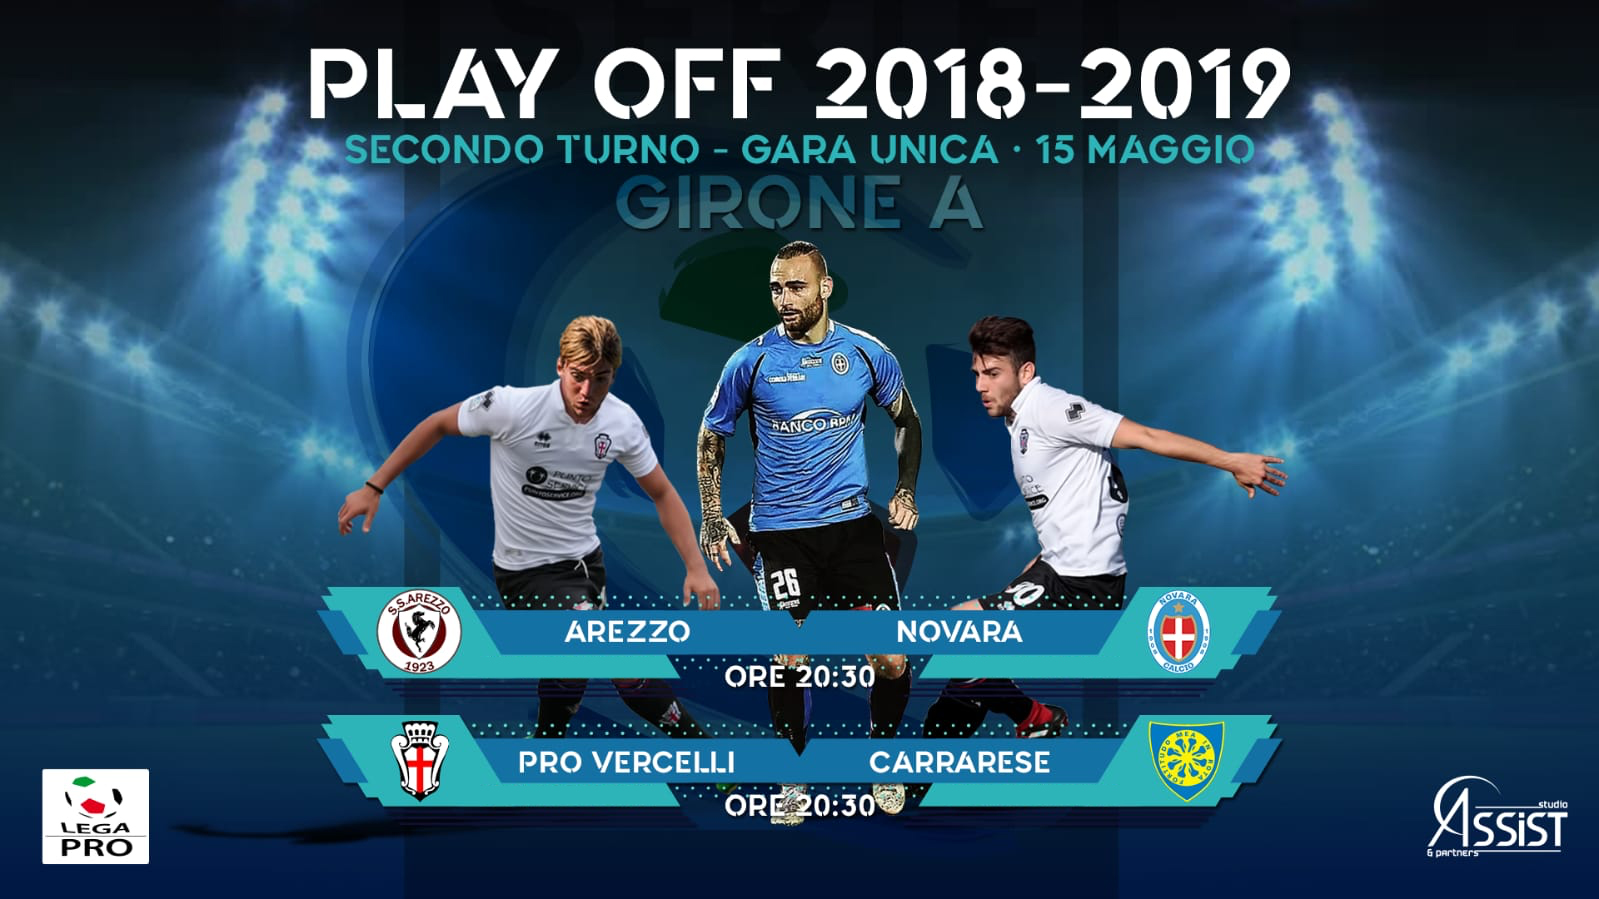 playoff-legapro-19 Foglia, Merio (ProVercelli) e Sbraga (Novara) al secondo turno dei playoff di Lega Pro